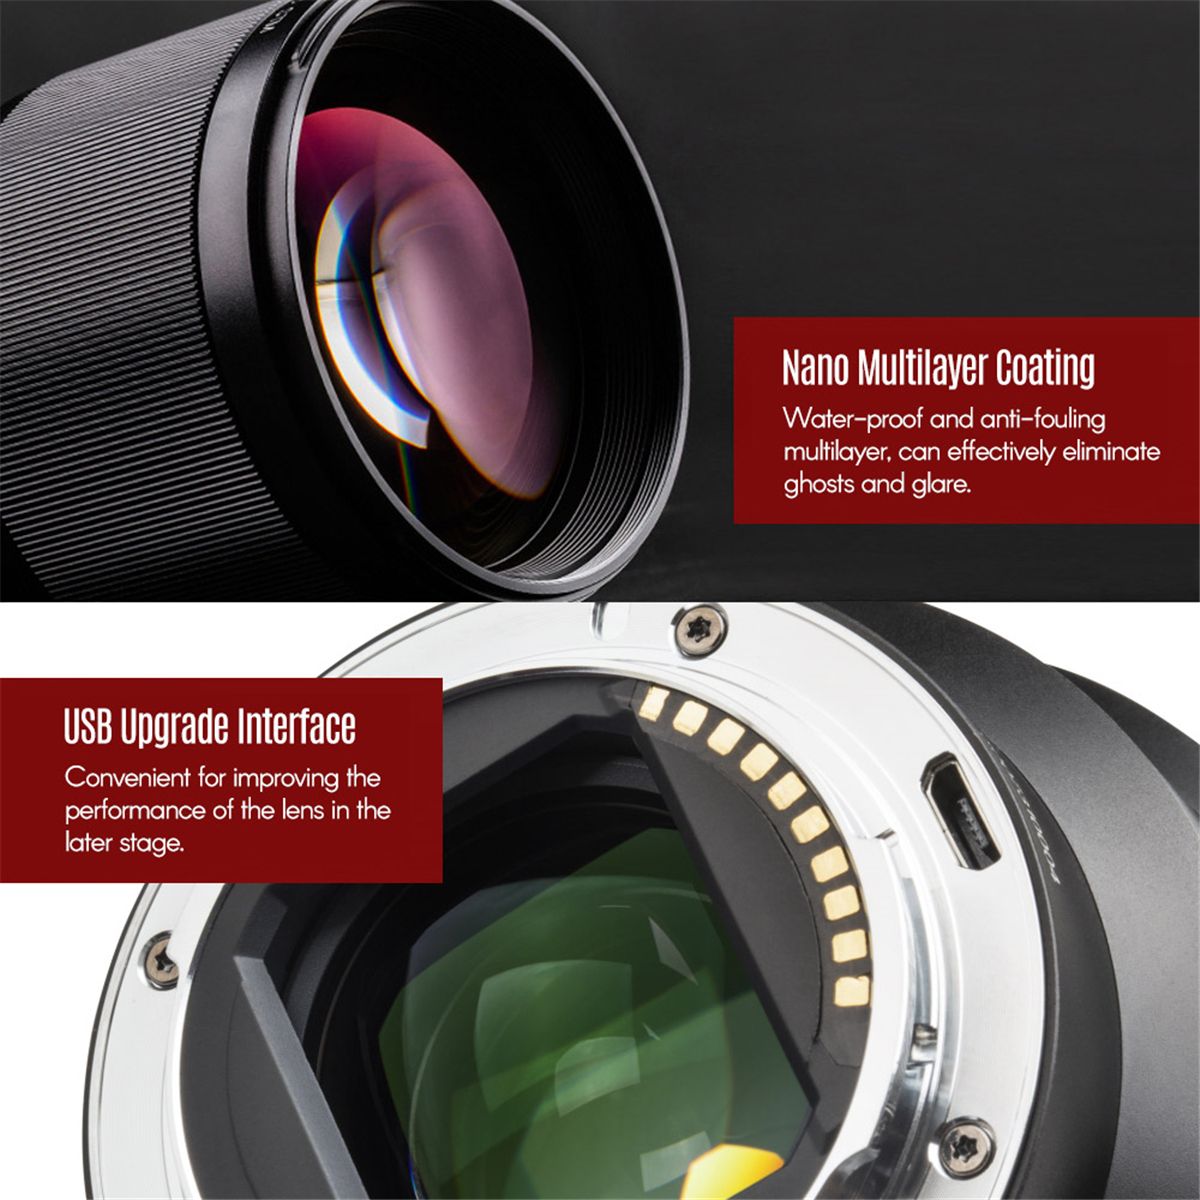 Viltrox-PFU-RBMH-85mm-F18-STM-Auto-Focus-Lens-for-Sony-E-Mount-Full-Frame-DSLR-Camera-1534969